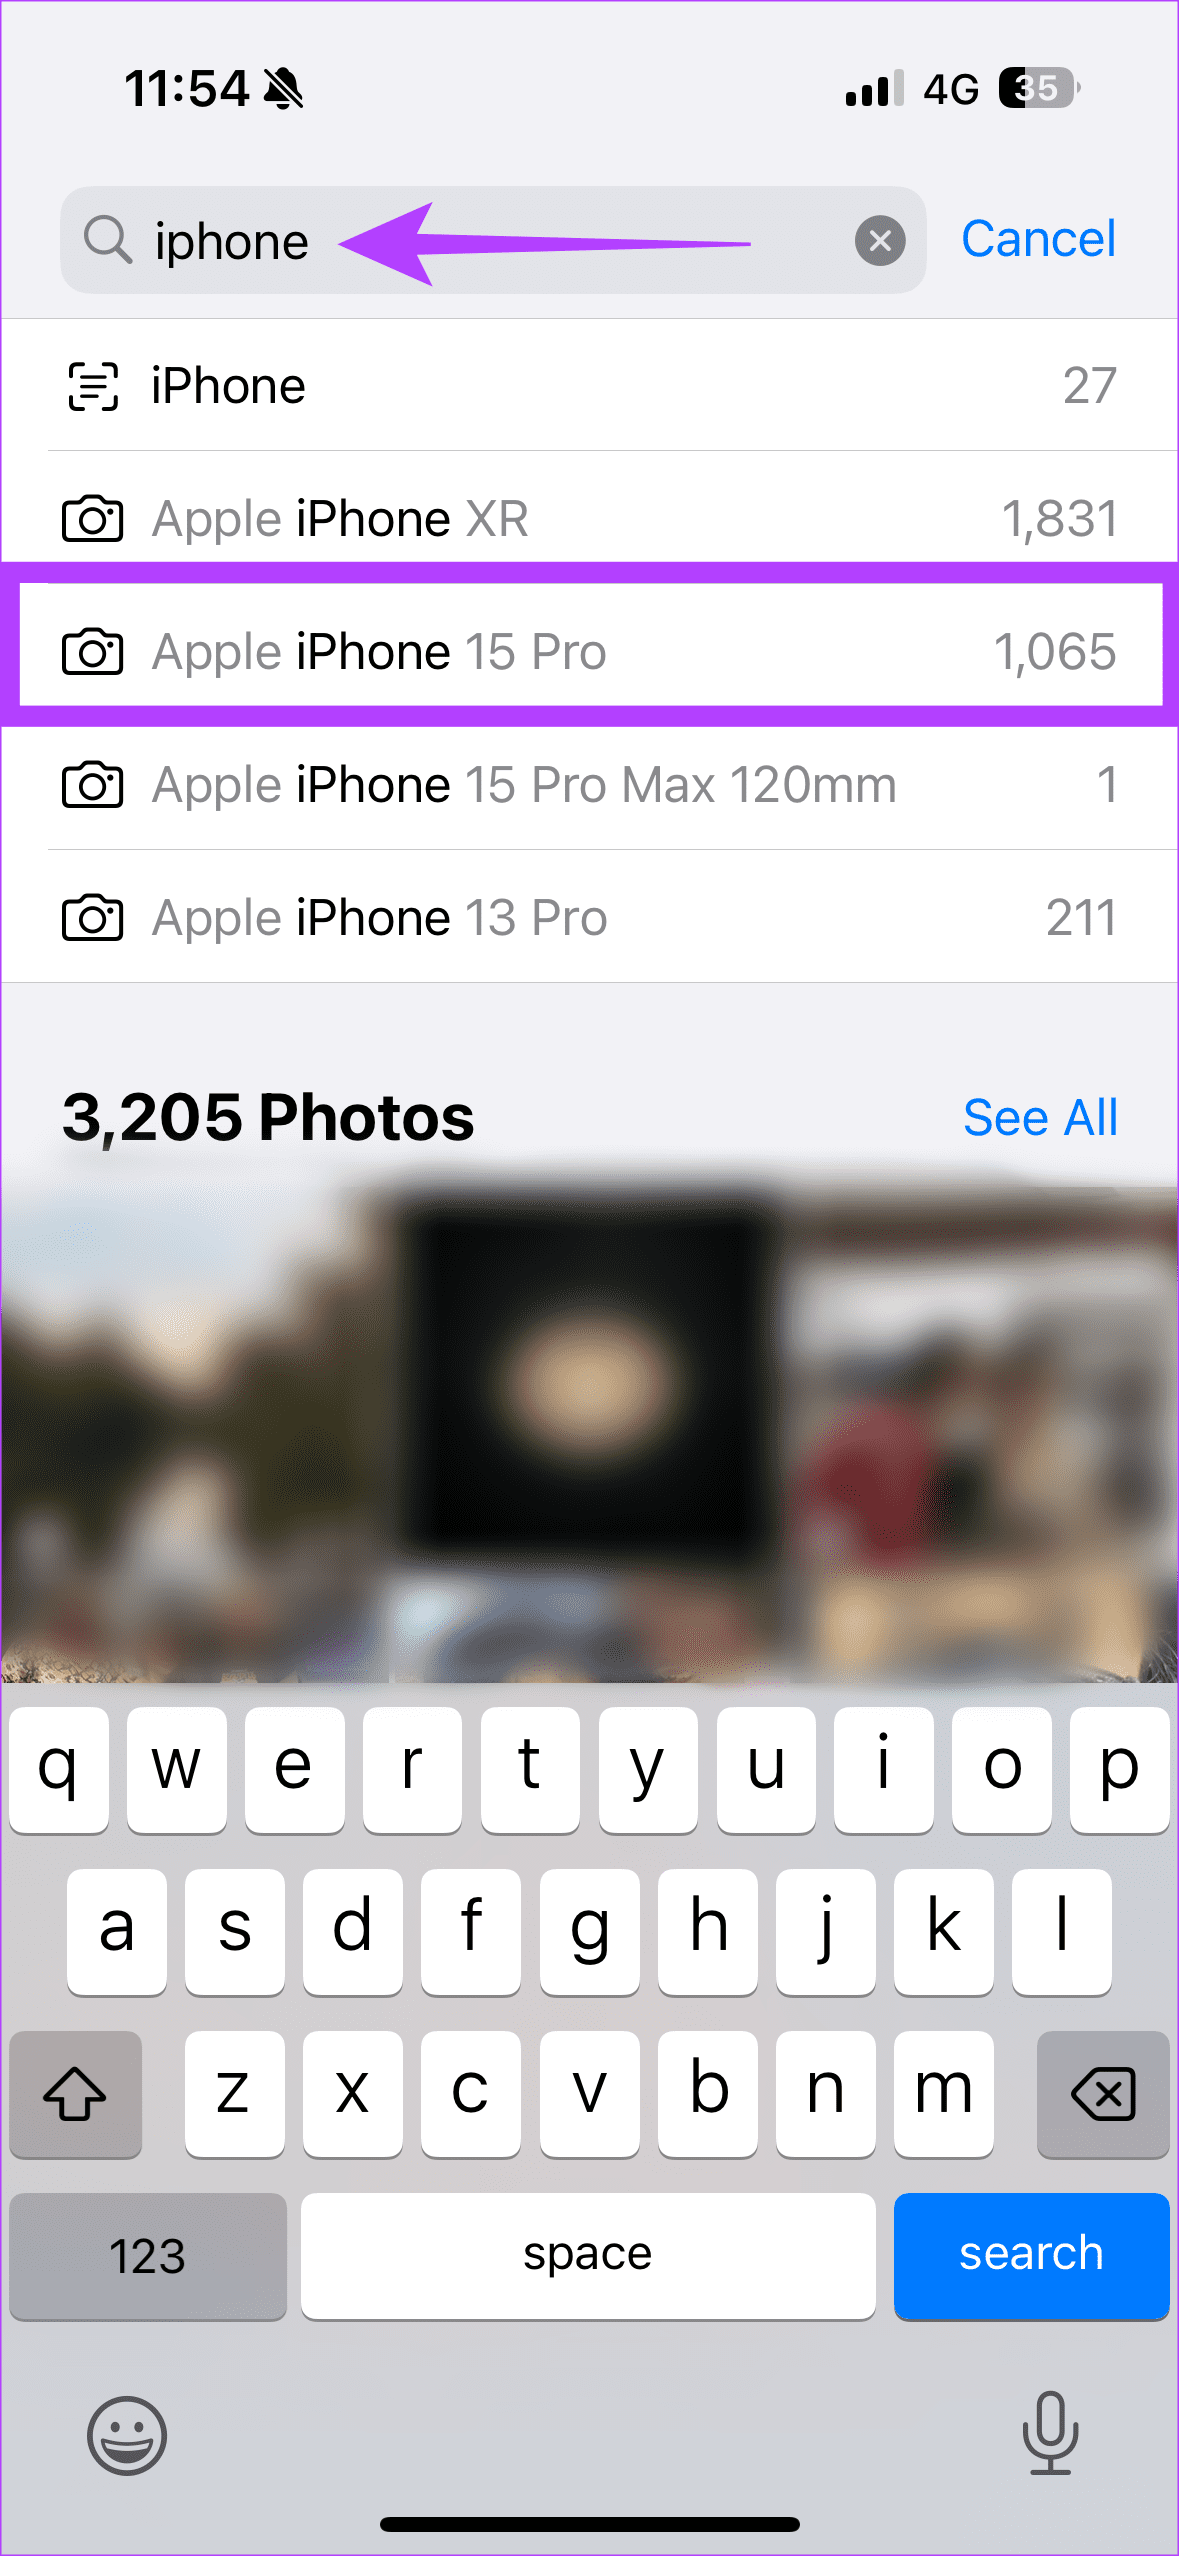 Comment afficher uniquement les photos de l'appareil photo sur iPhone